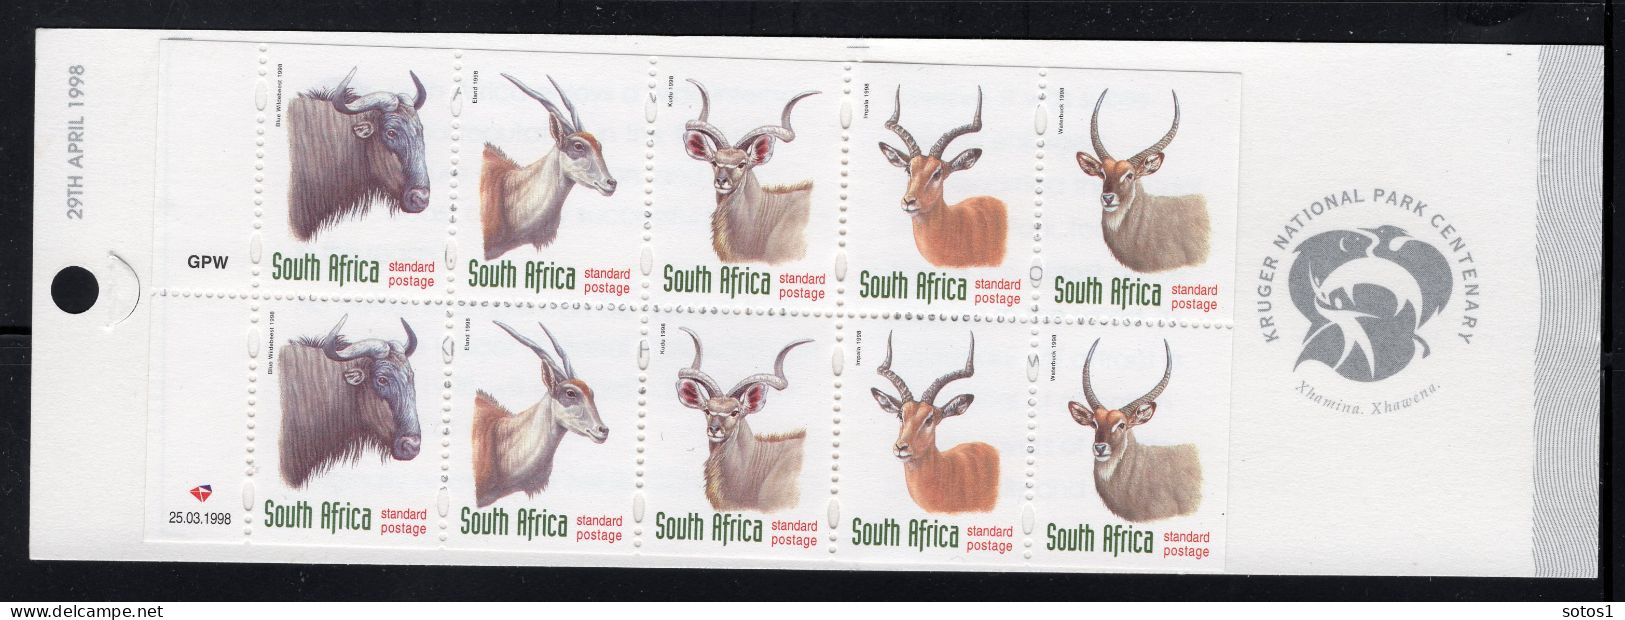 ZUID AFRIKA Yt. C998a MNH Postzegelboekje 1998 - Carnets